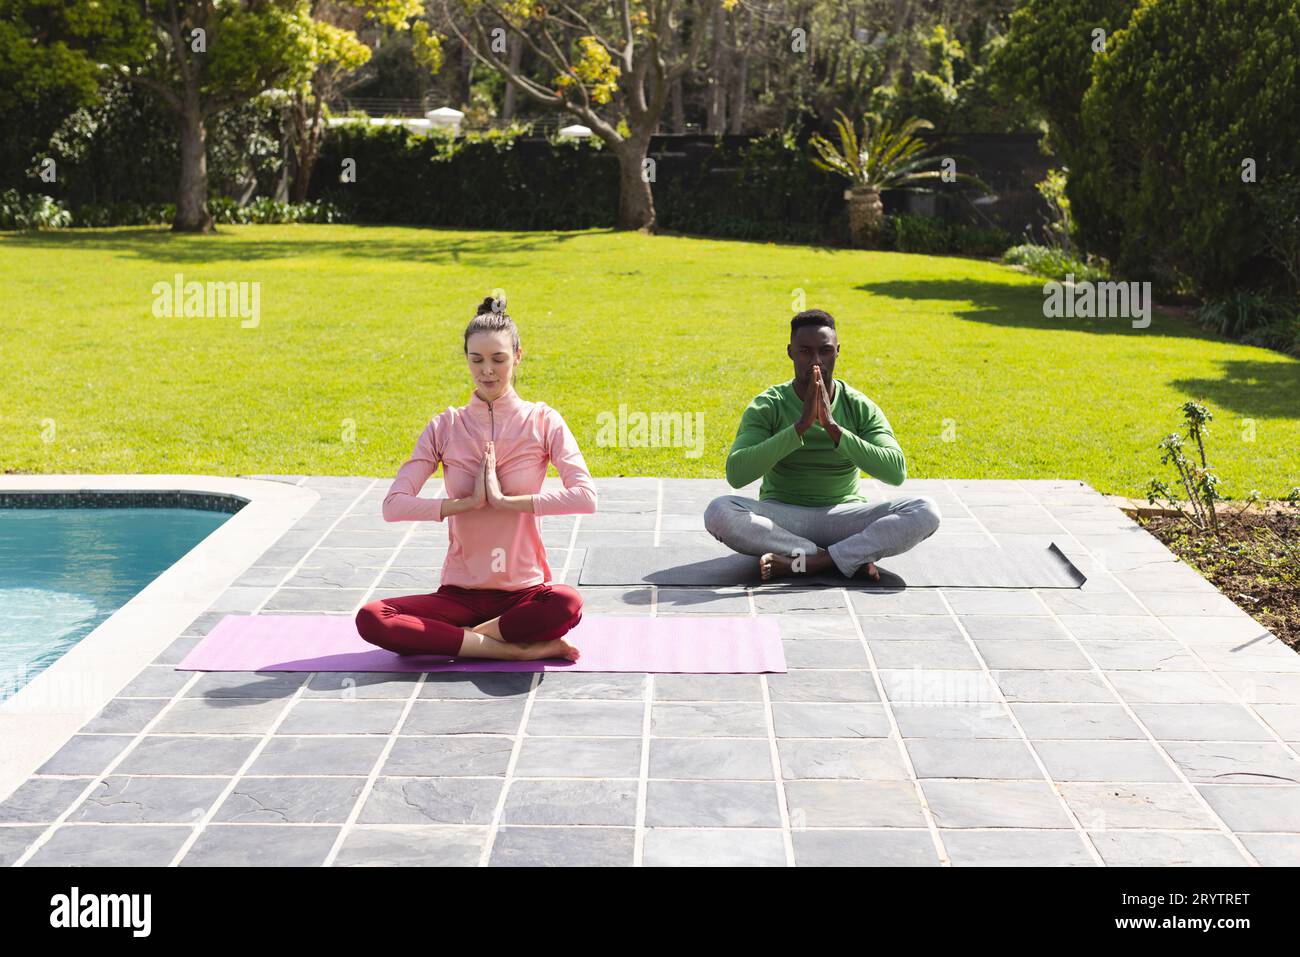 Coppie diverse che praticano yoga e meditano vicino alla piscina in giardino Foto Stock